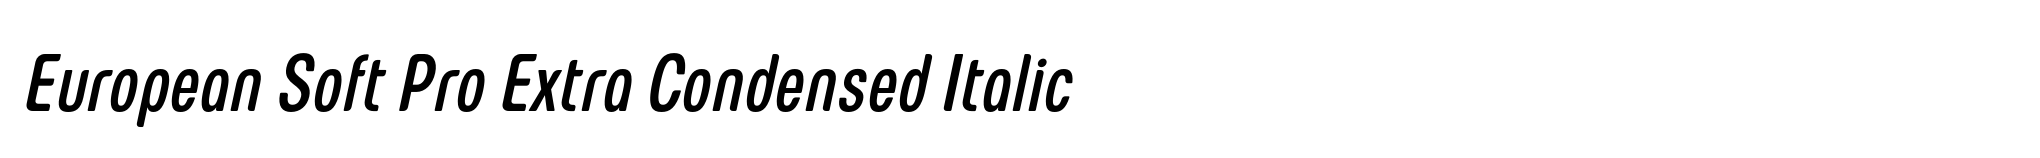 European Soft Pro Extra Condensed Italic image